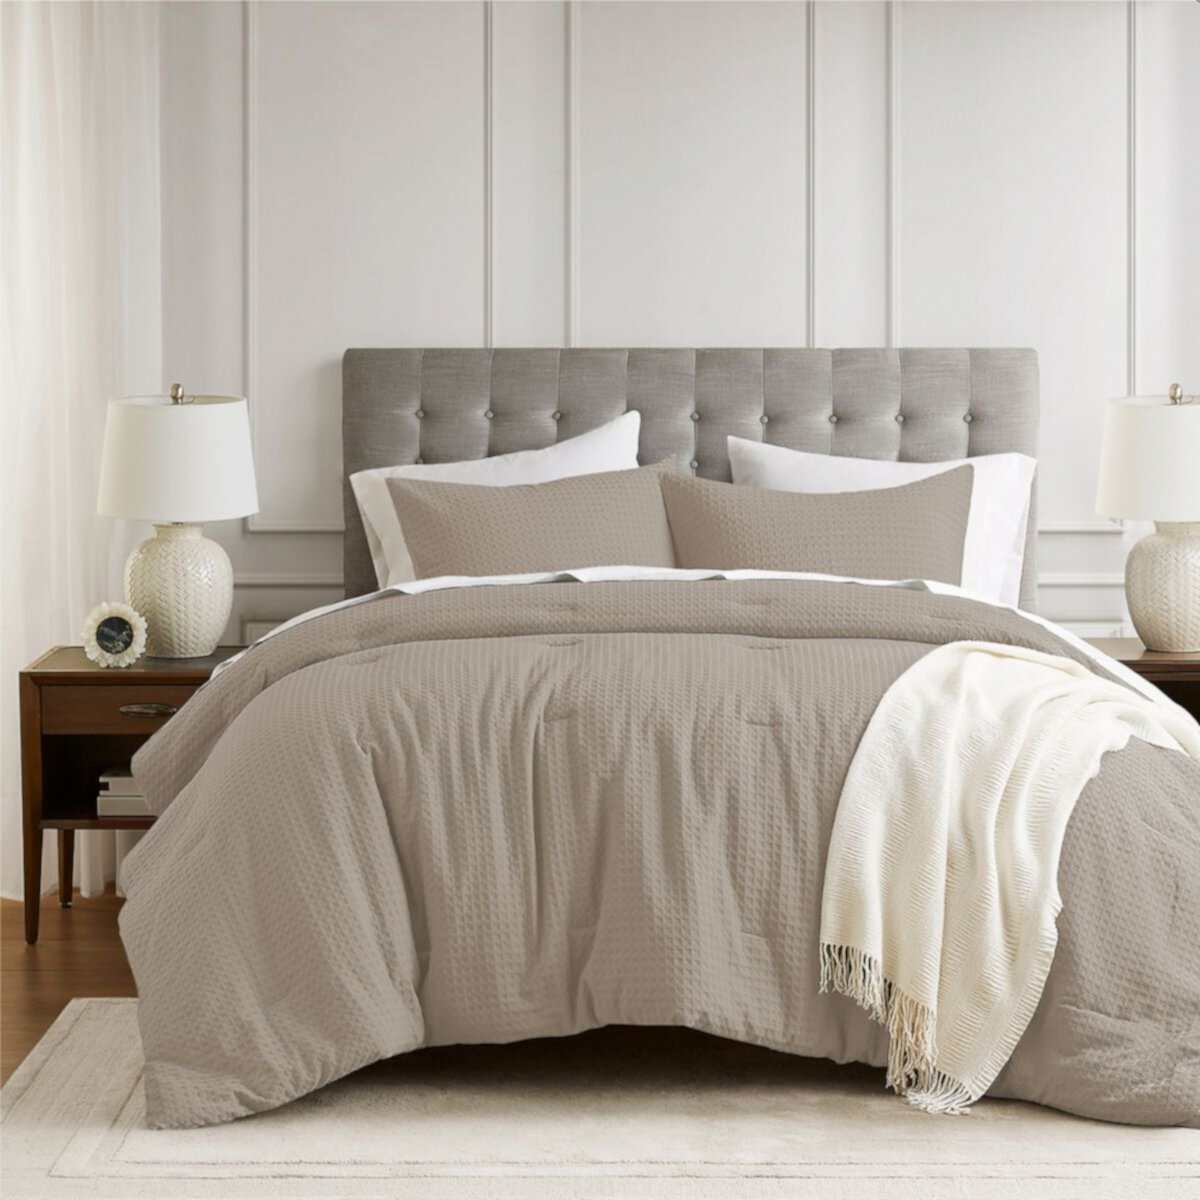 510 Design Mina Комплект одеял с текстурированной вафельной тканью 510 Design